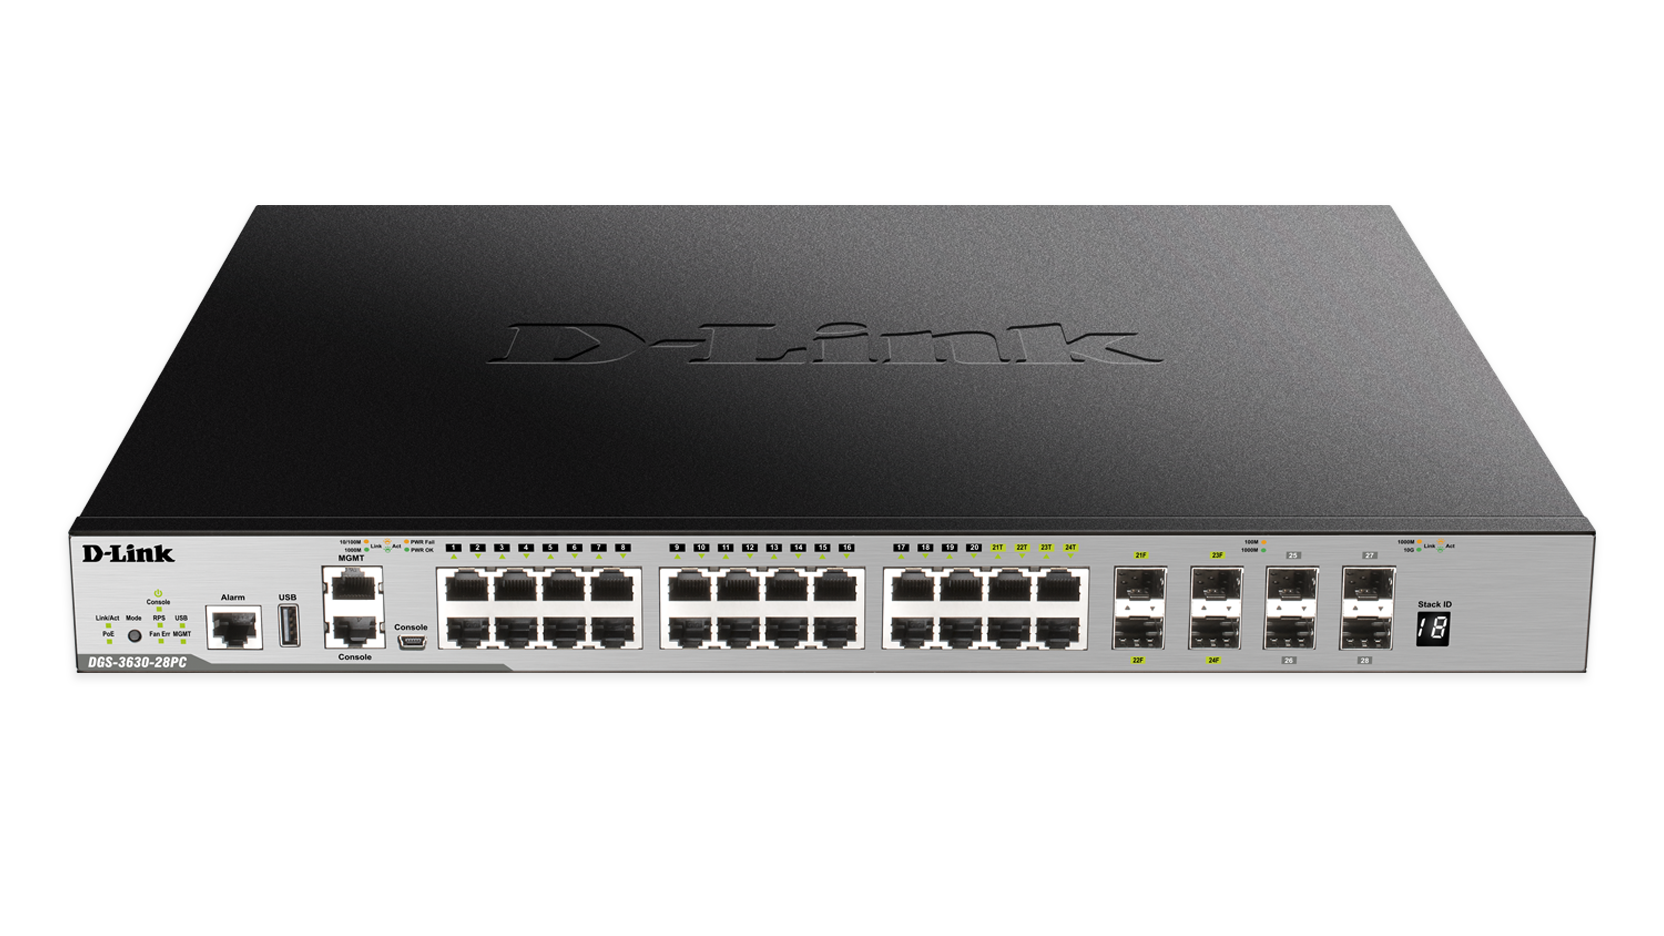 D-Link 10-Port PoE Gigabit Switch - (DGS-1010MP)